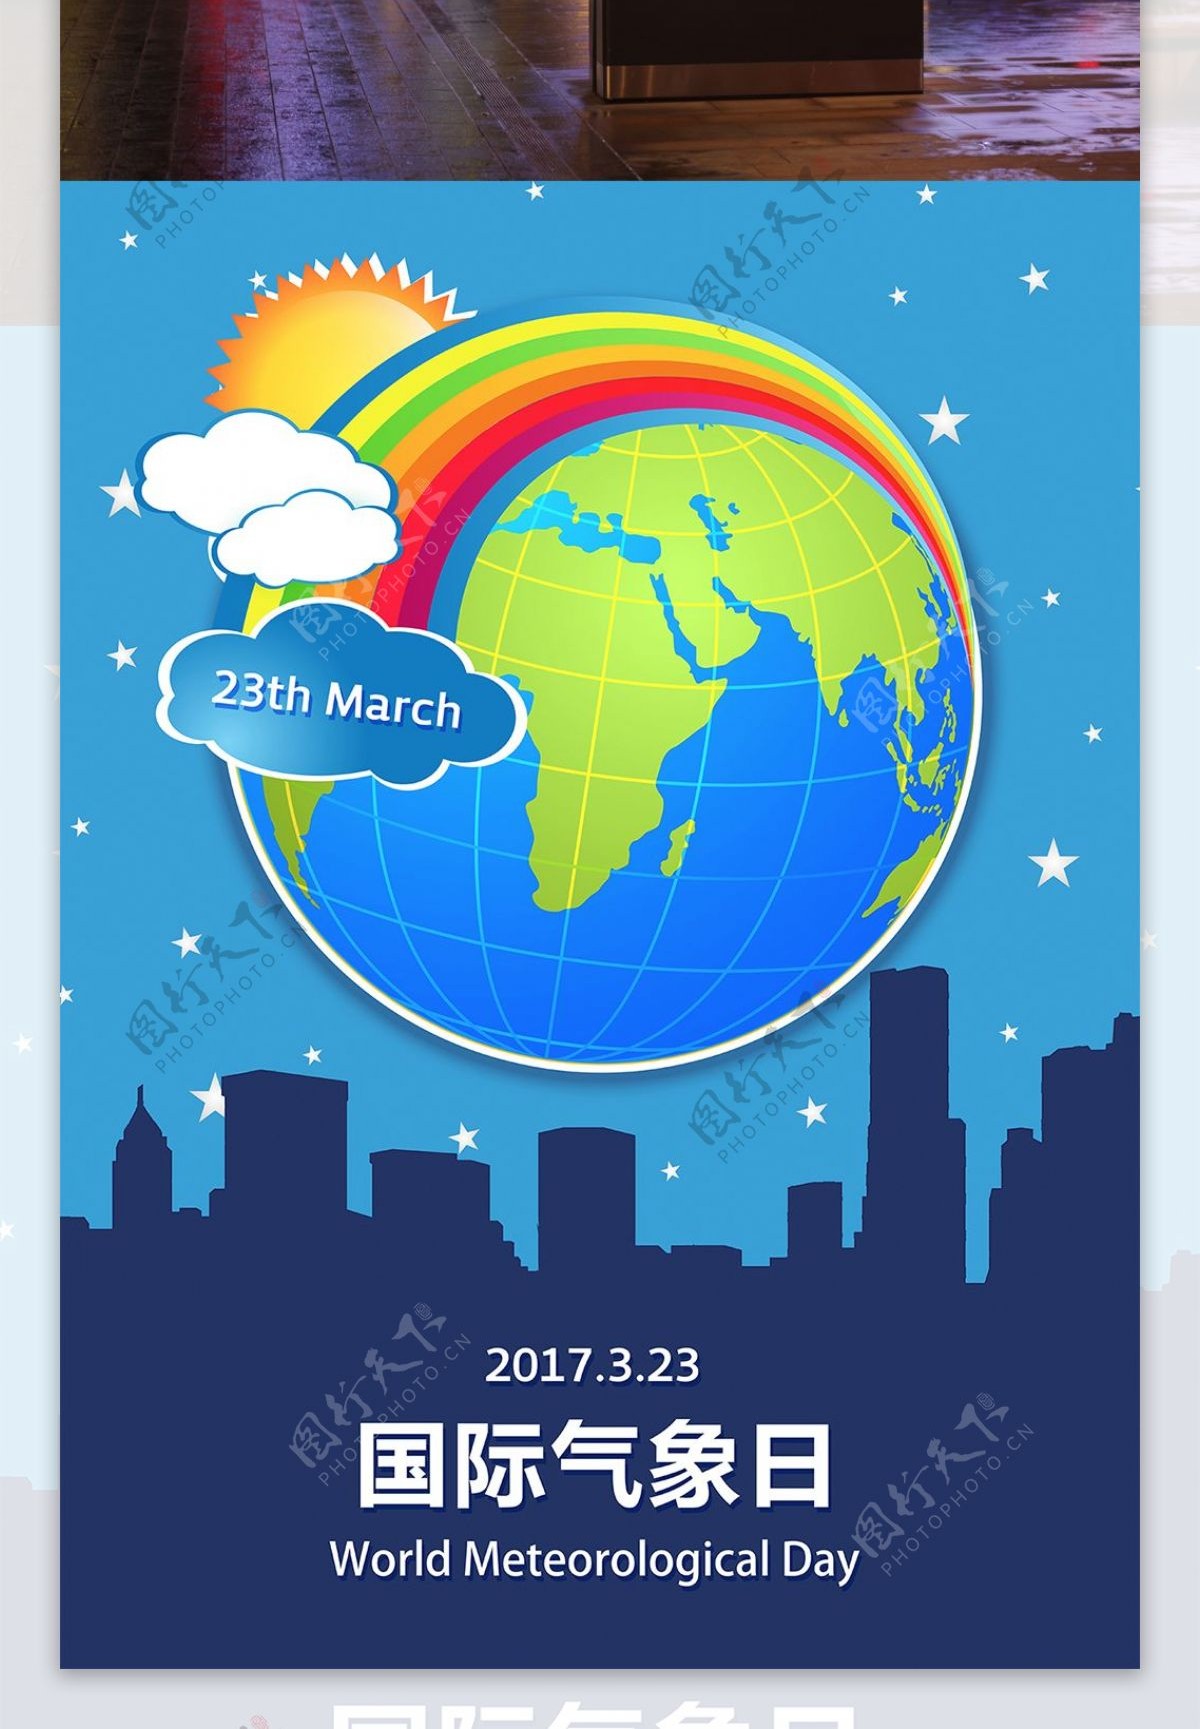 323国际气象日世界气象日海报